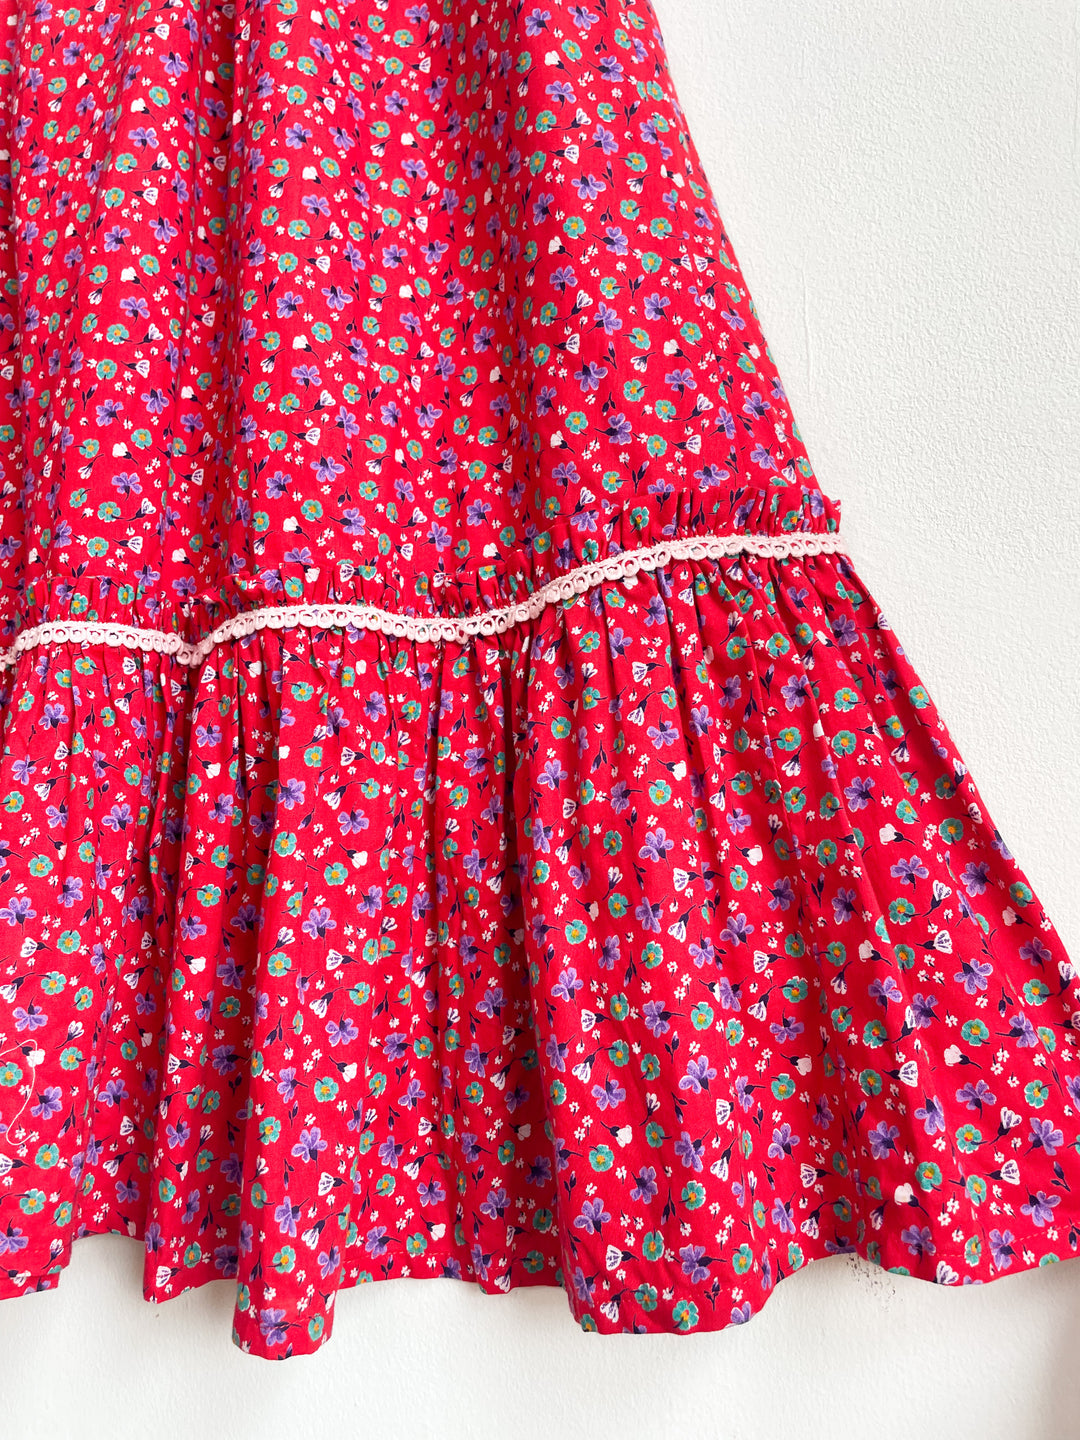 The Poinsettia 70s Skirt